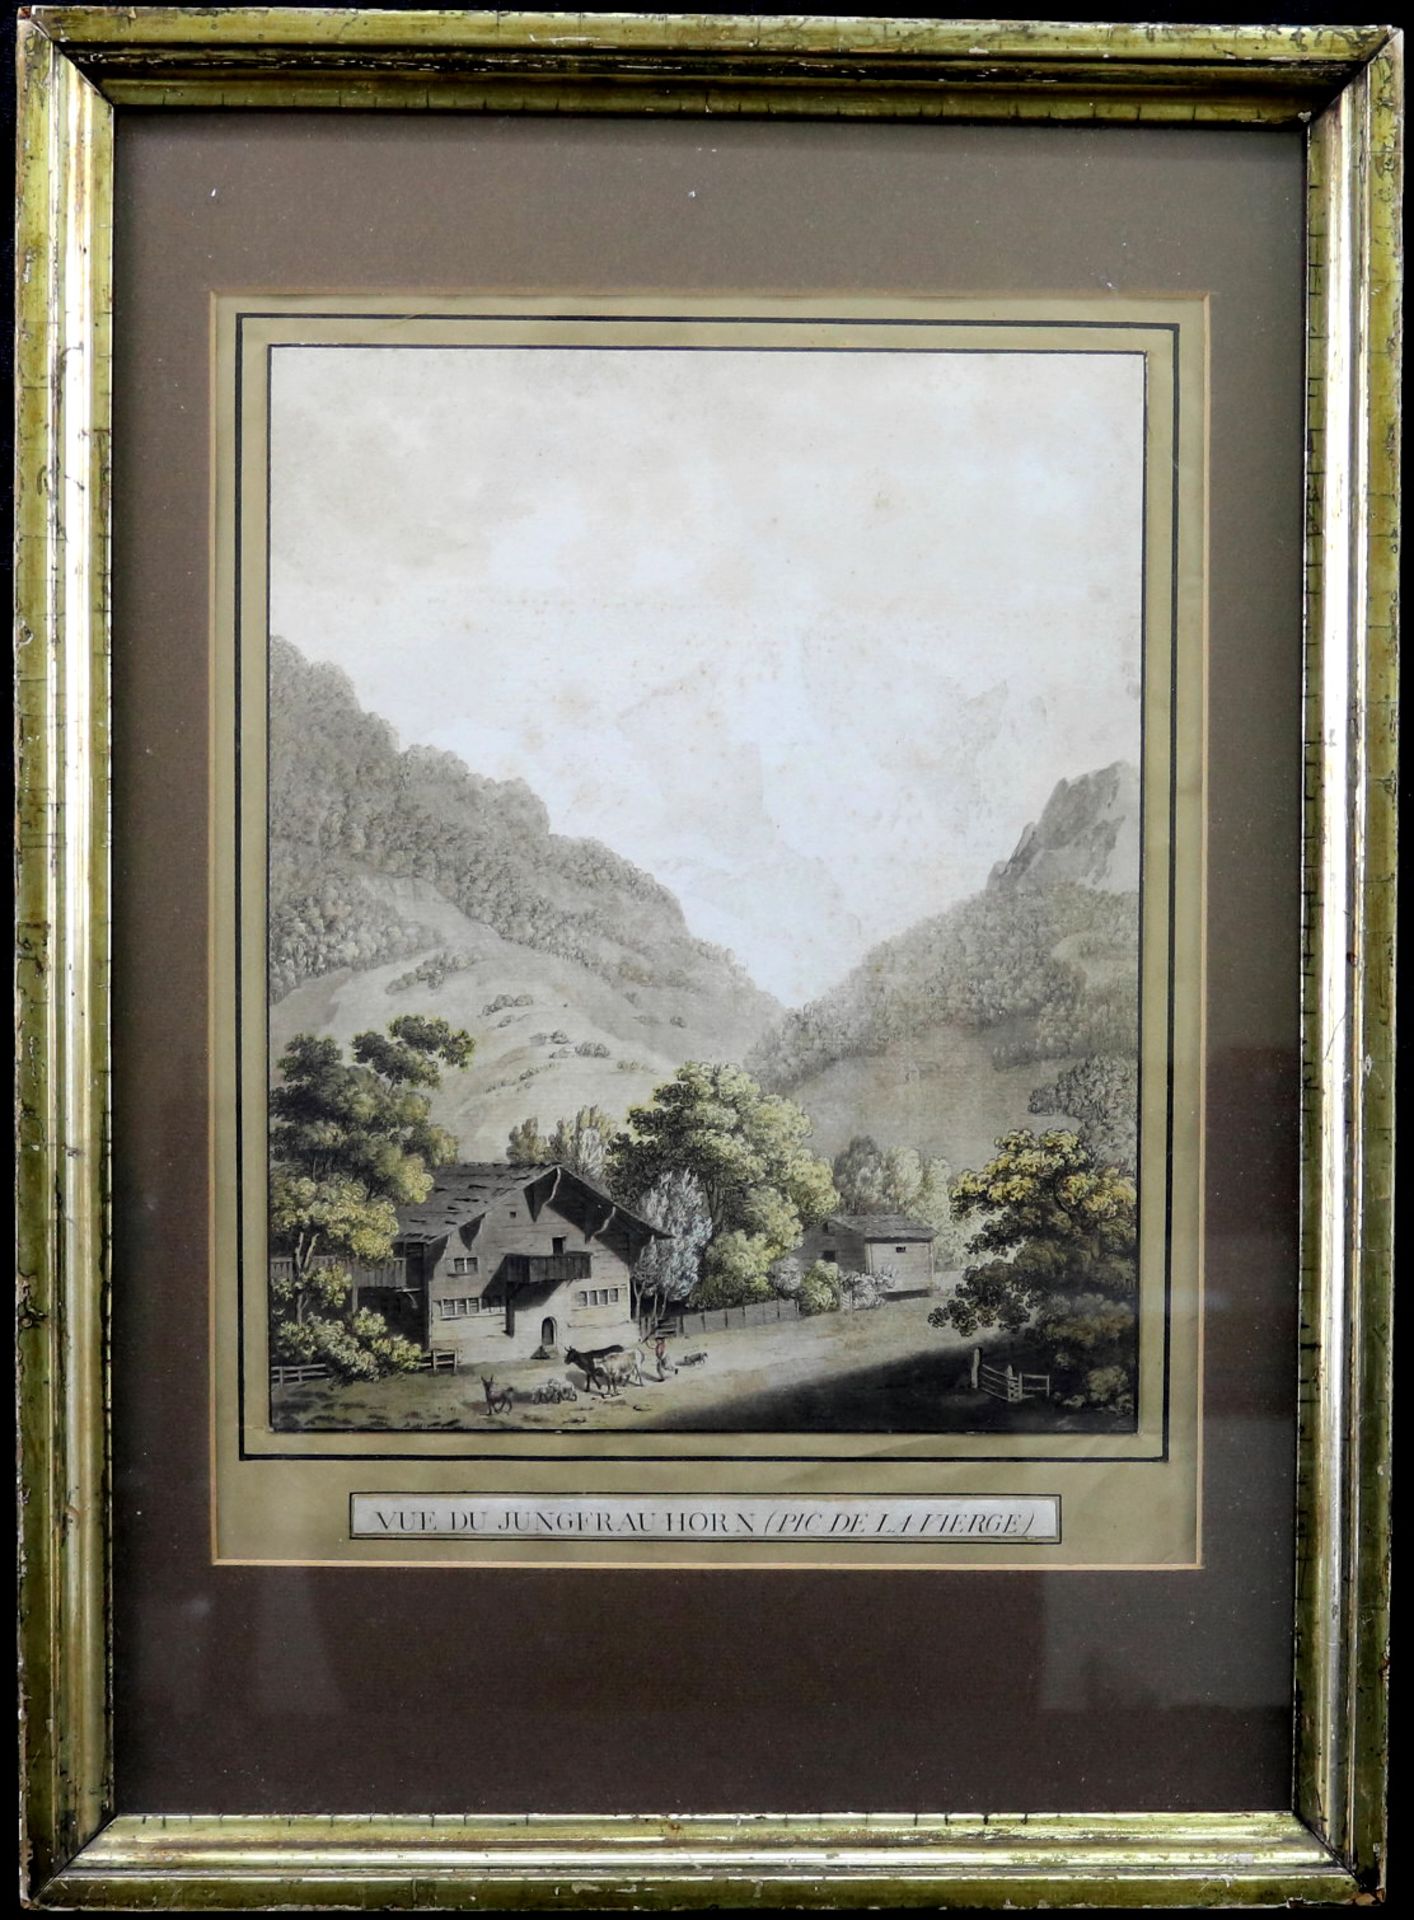 Kufperstich Johann Ludwig Aberli (*1723 Winterthur - 1786 Bern), "Vue du Jungfrau Horn", um 1770, 34